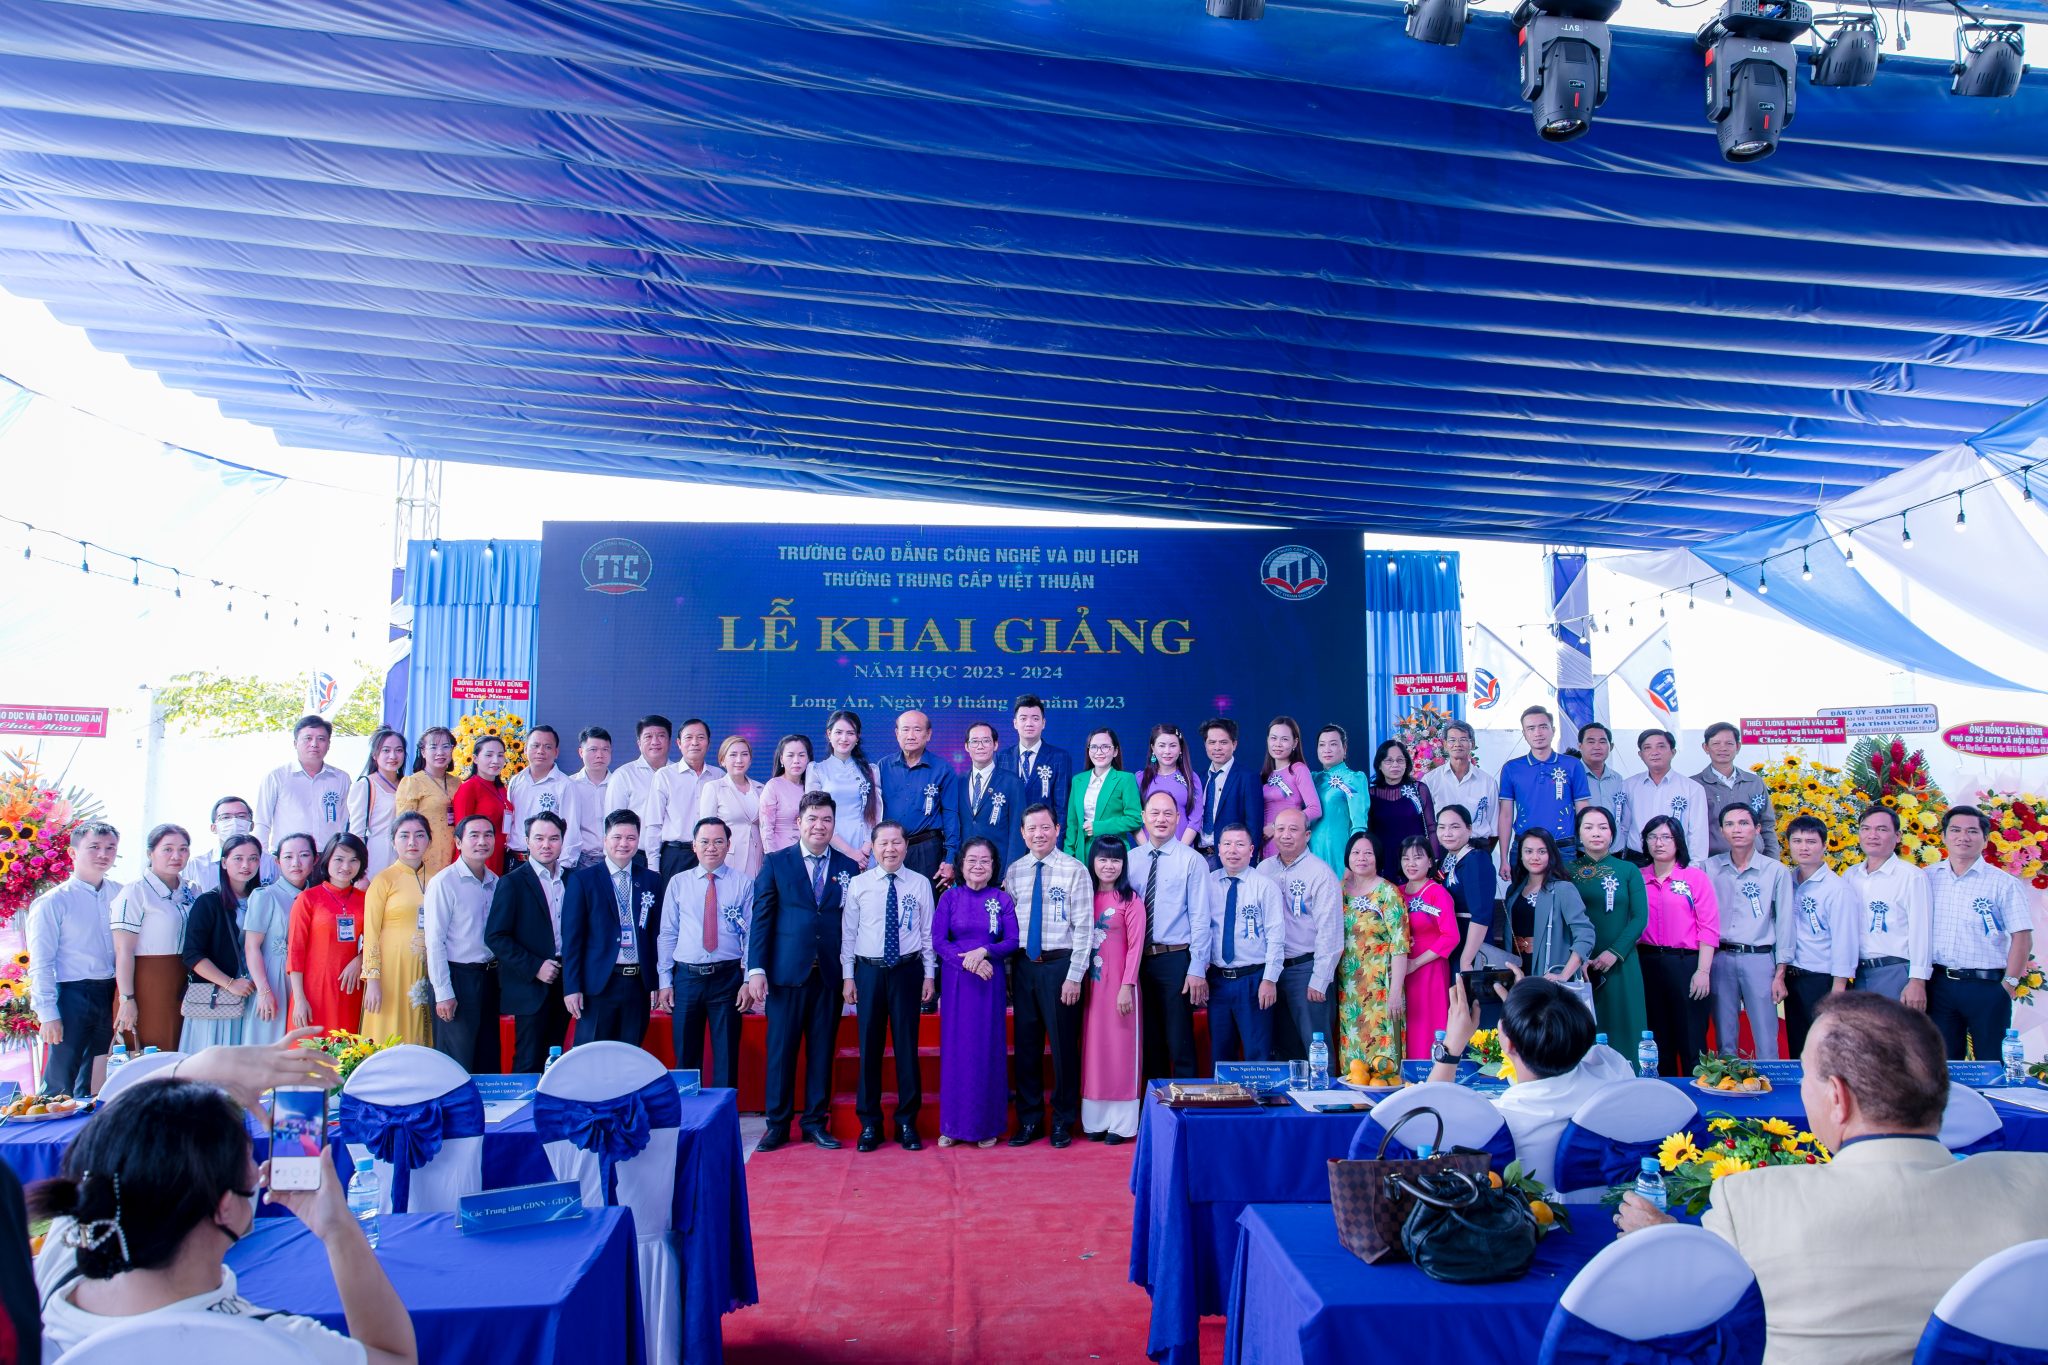 Trường Cao đẳng Công nghệ Và Du lịch và Trường Trung Cấp Việt Thuận khai giảng đón chào năm học mới 2023 – 2024